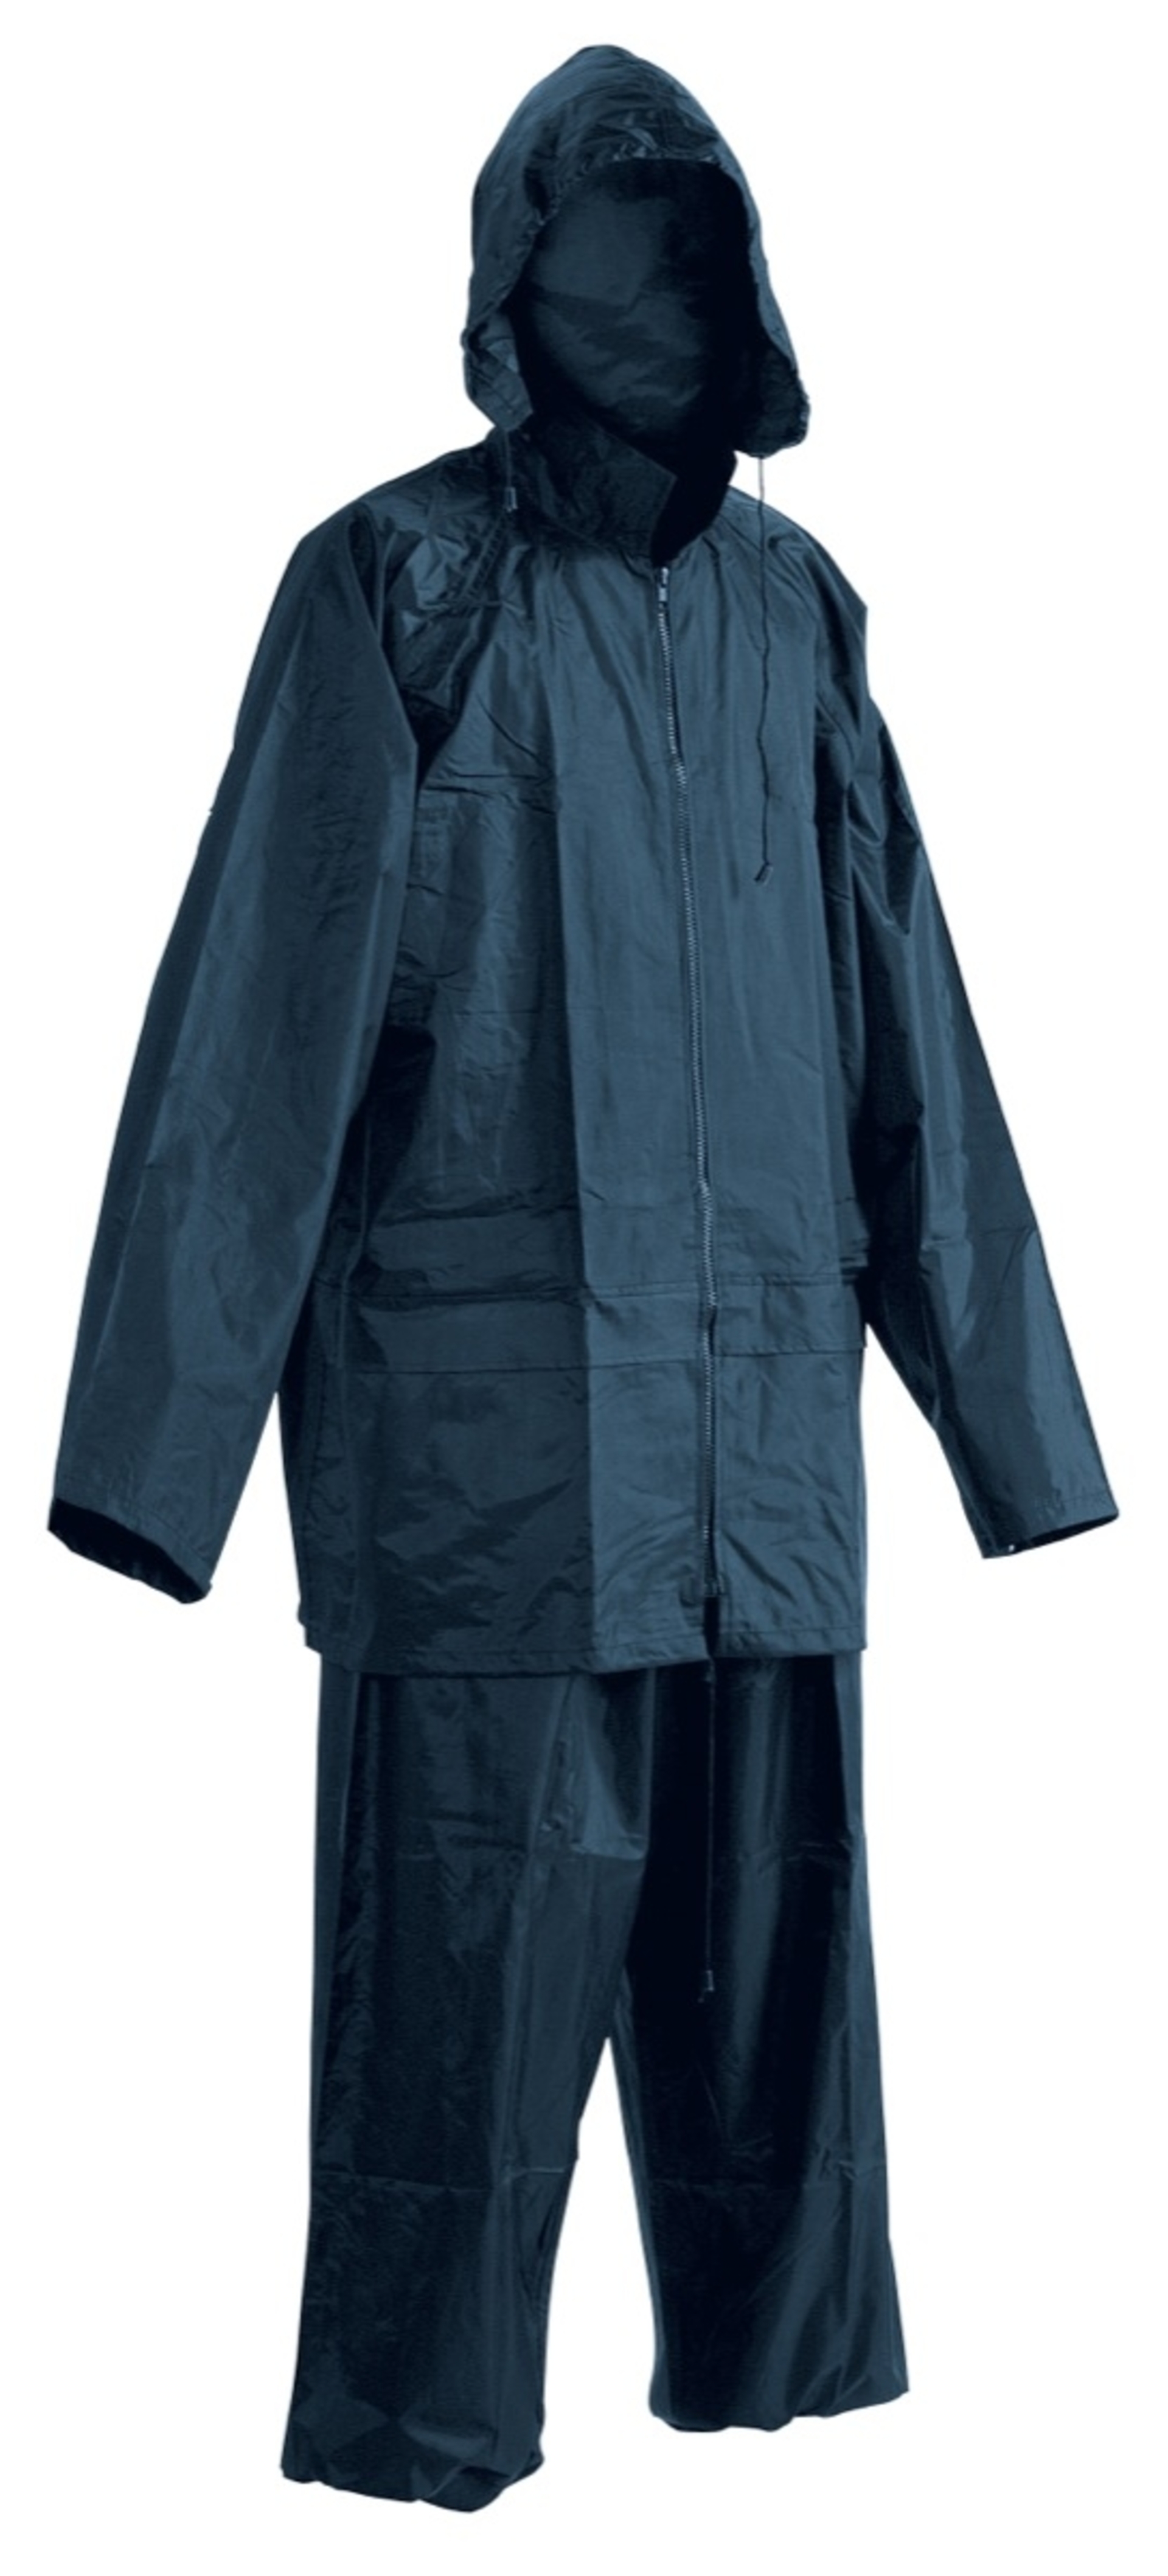 Cerva CARINA Oblek nepromokavý modrá M + Bezplatné vrácení zboží